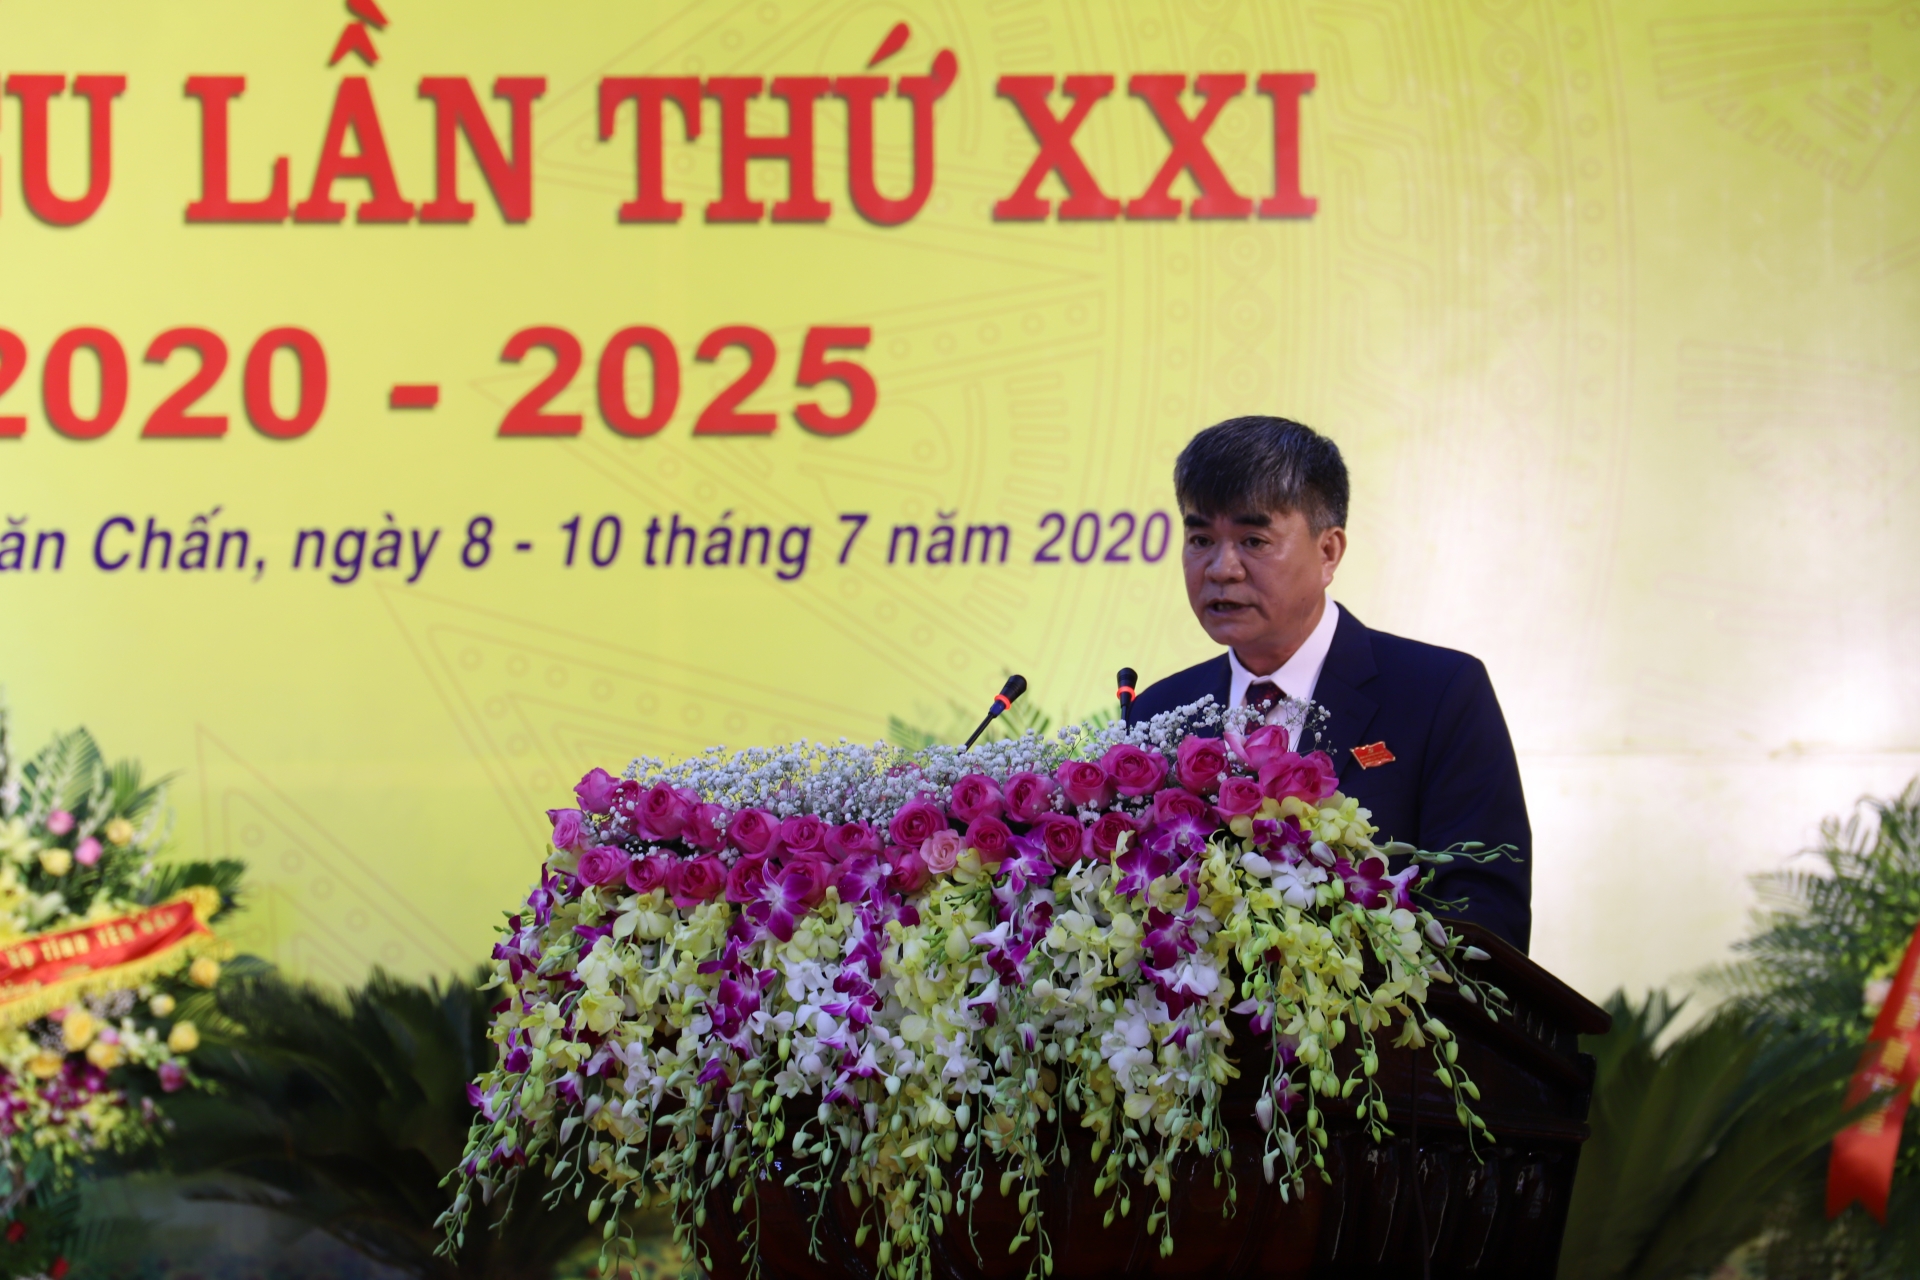 khai mac dai hoi dang bo huyen van chan lan thu xxi nhiem ky2020 2025